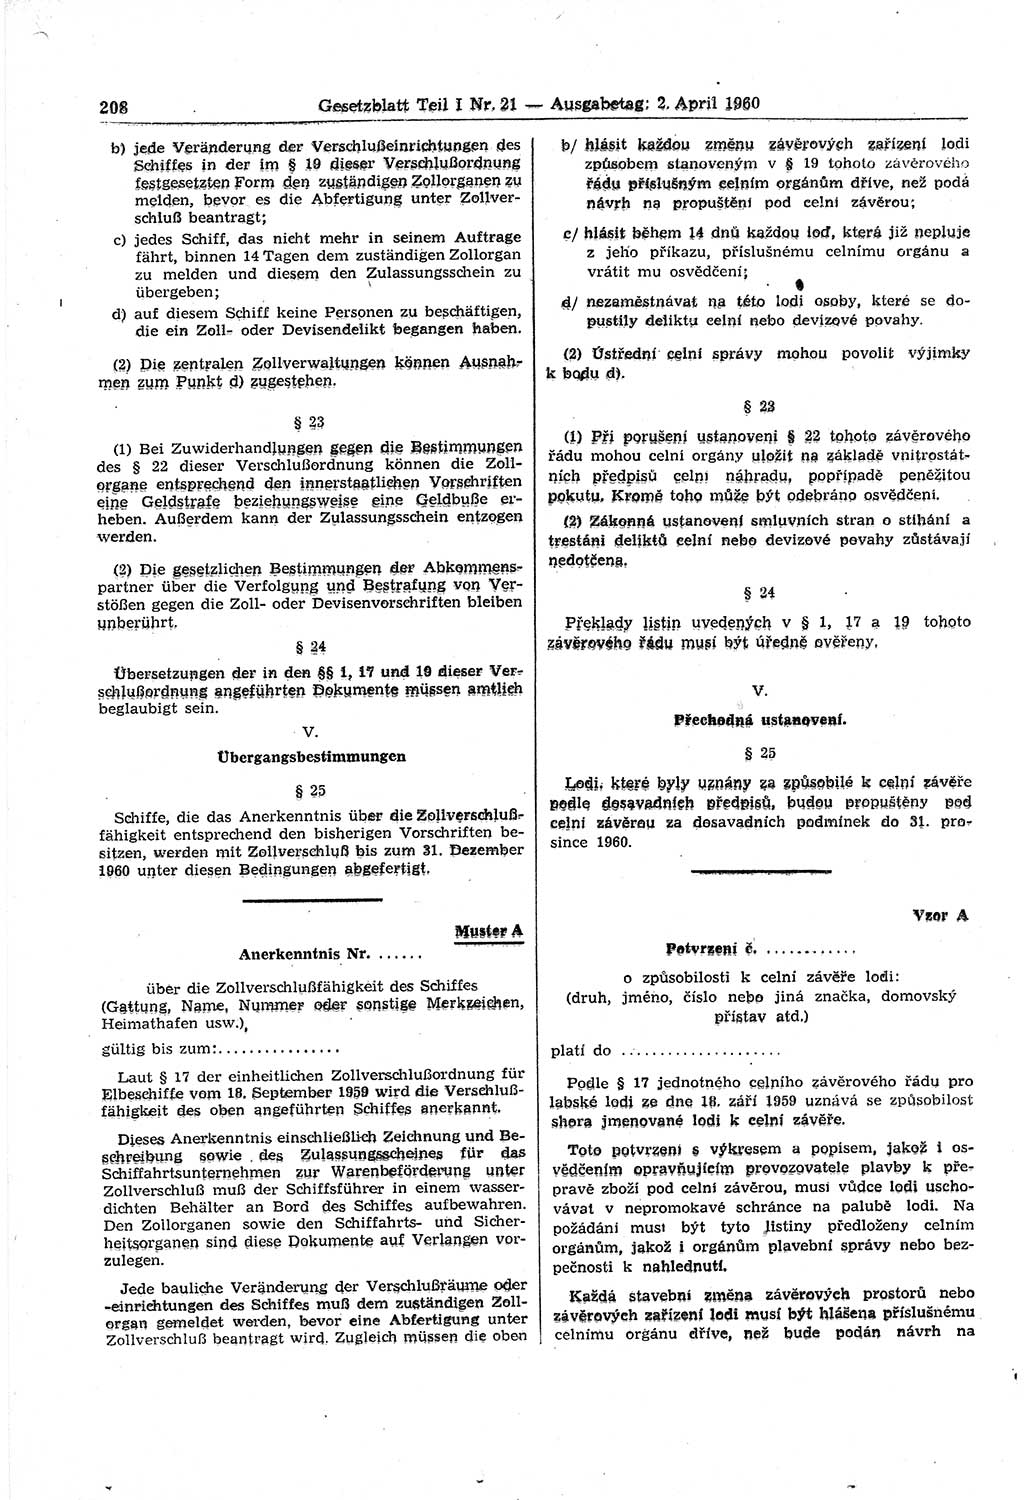 Gesetzblatt (GBl.) der Deutschen Demokratischen Republik (DDR) Teil Ⅰ 1960, Seite 208 (GBl. DDR Ⅰ 1960, S. 208)